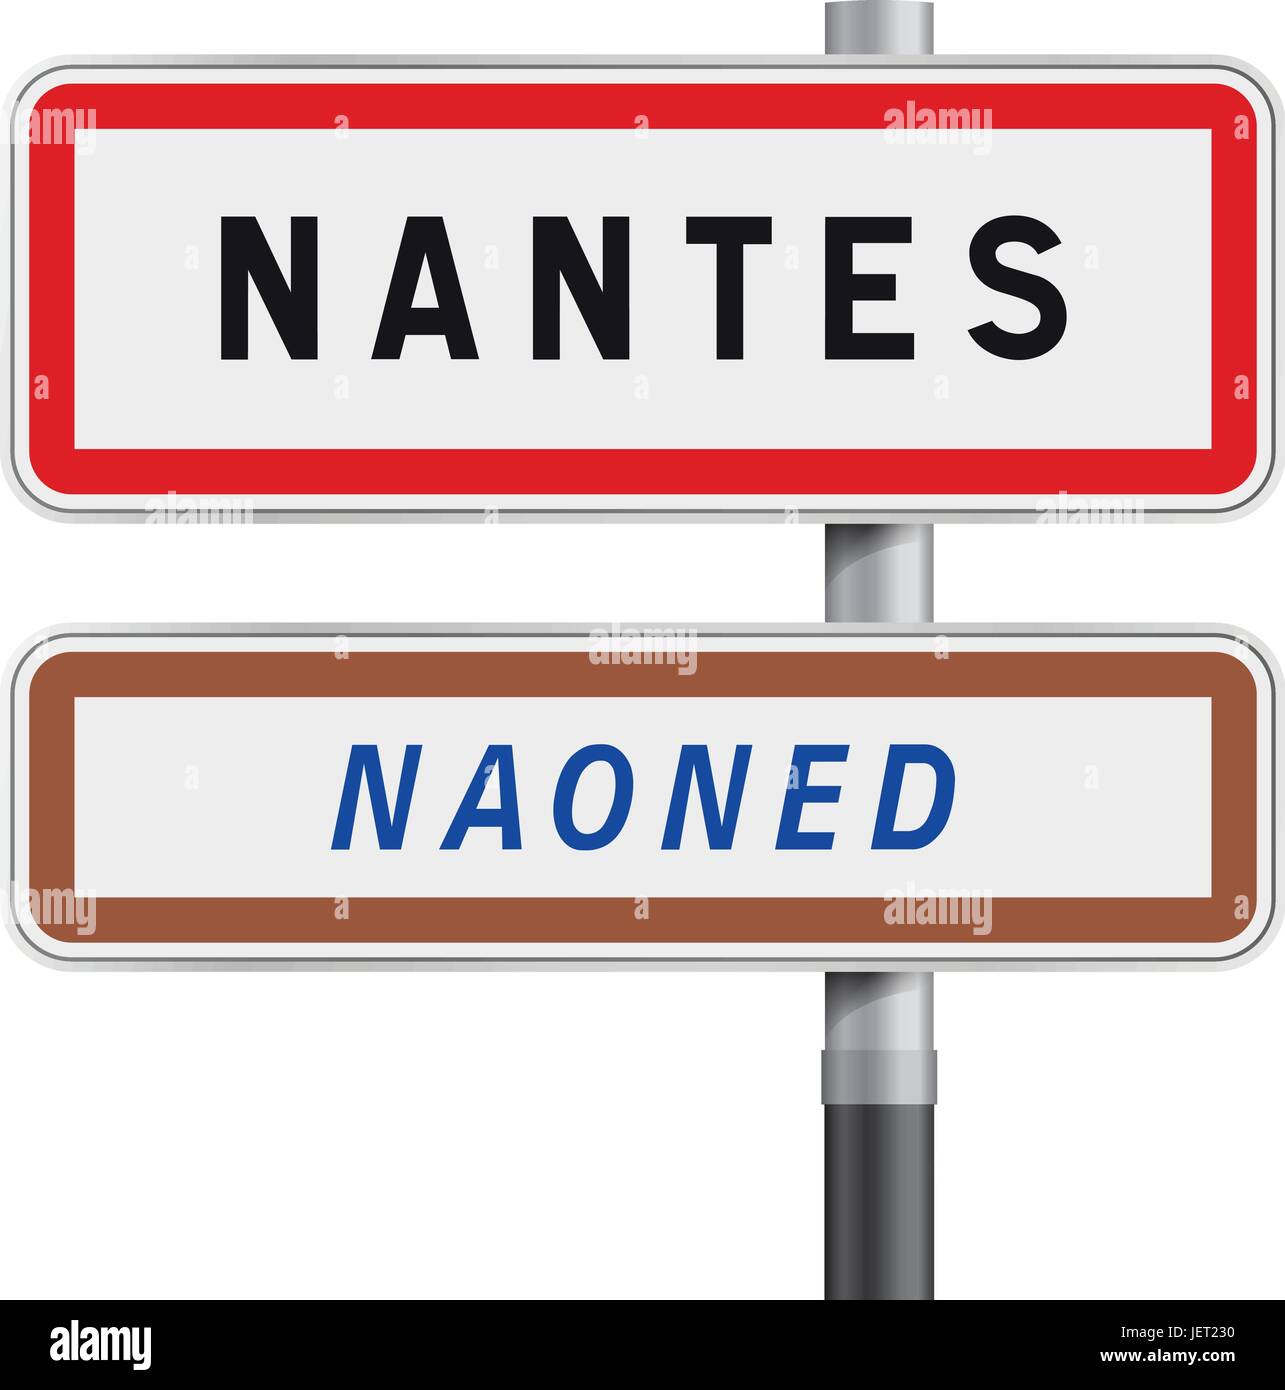 Illustrazione Vettoriale di Nantes cartelli stradali entrata con il Breton traduction Naoned Illustrazione Vettoriale